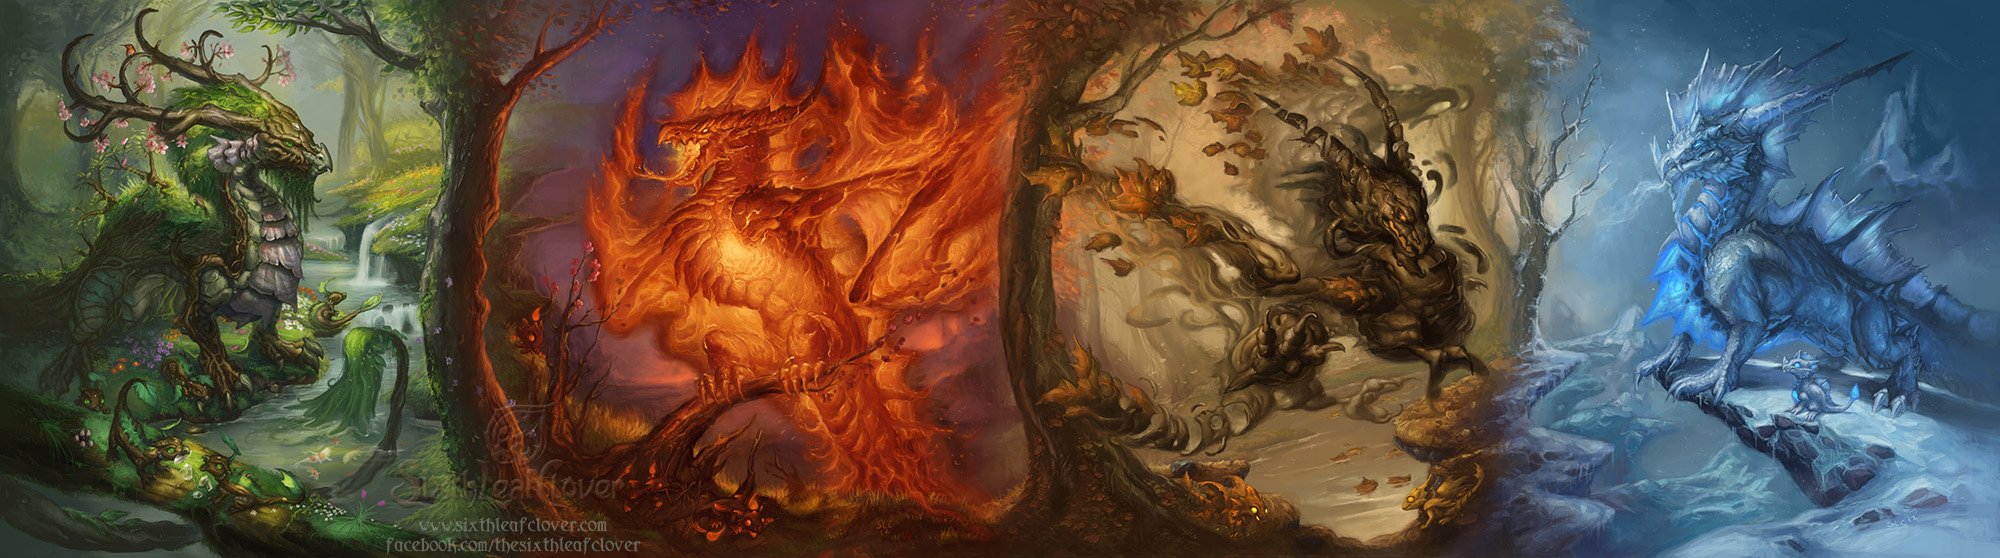 sixthleafclover-dragons-of-seasons.jpg